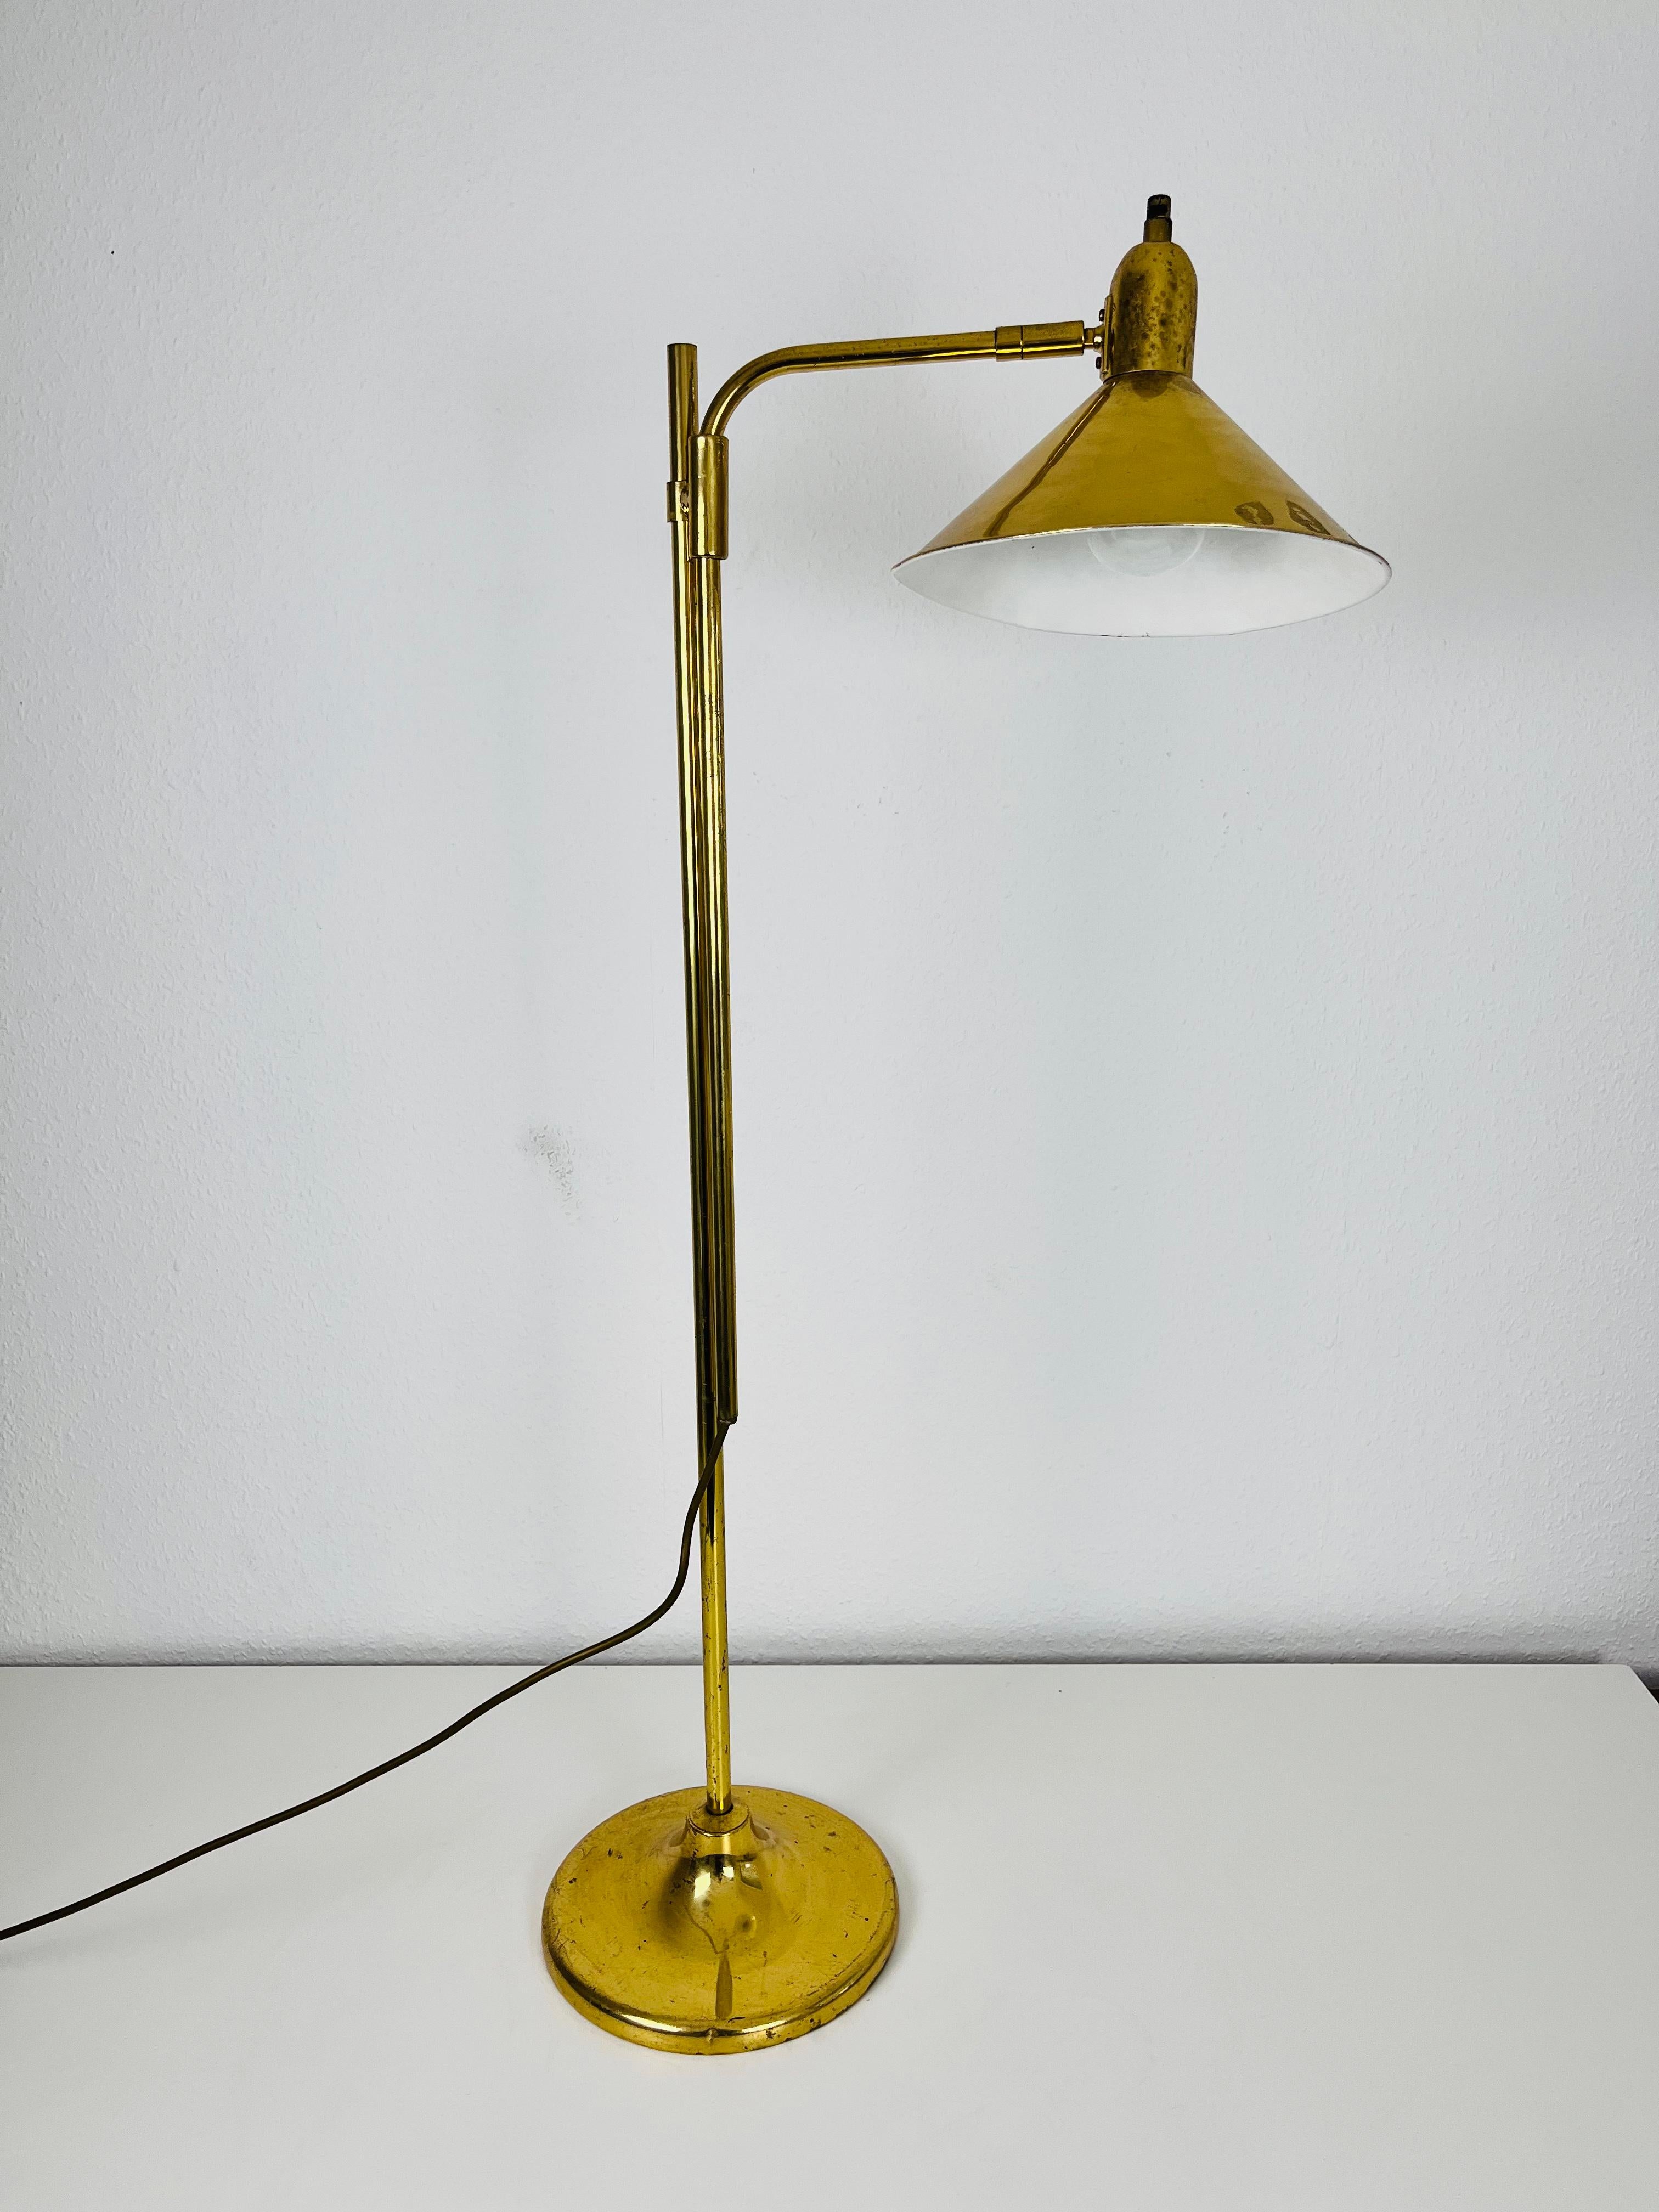 Lampadaire en laiton fabriqué en Allemagne dans les années 1970. Il est fascinant avec sa barre réglable. La lampe est entièrement en laiton, y compris l'abat-jour.

Mesures :
Hauteur : 100-140 cm
Largeur : 24 cm
Profondeur : 35 cm

La lampe